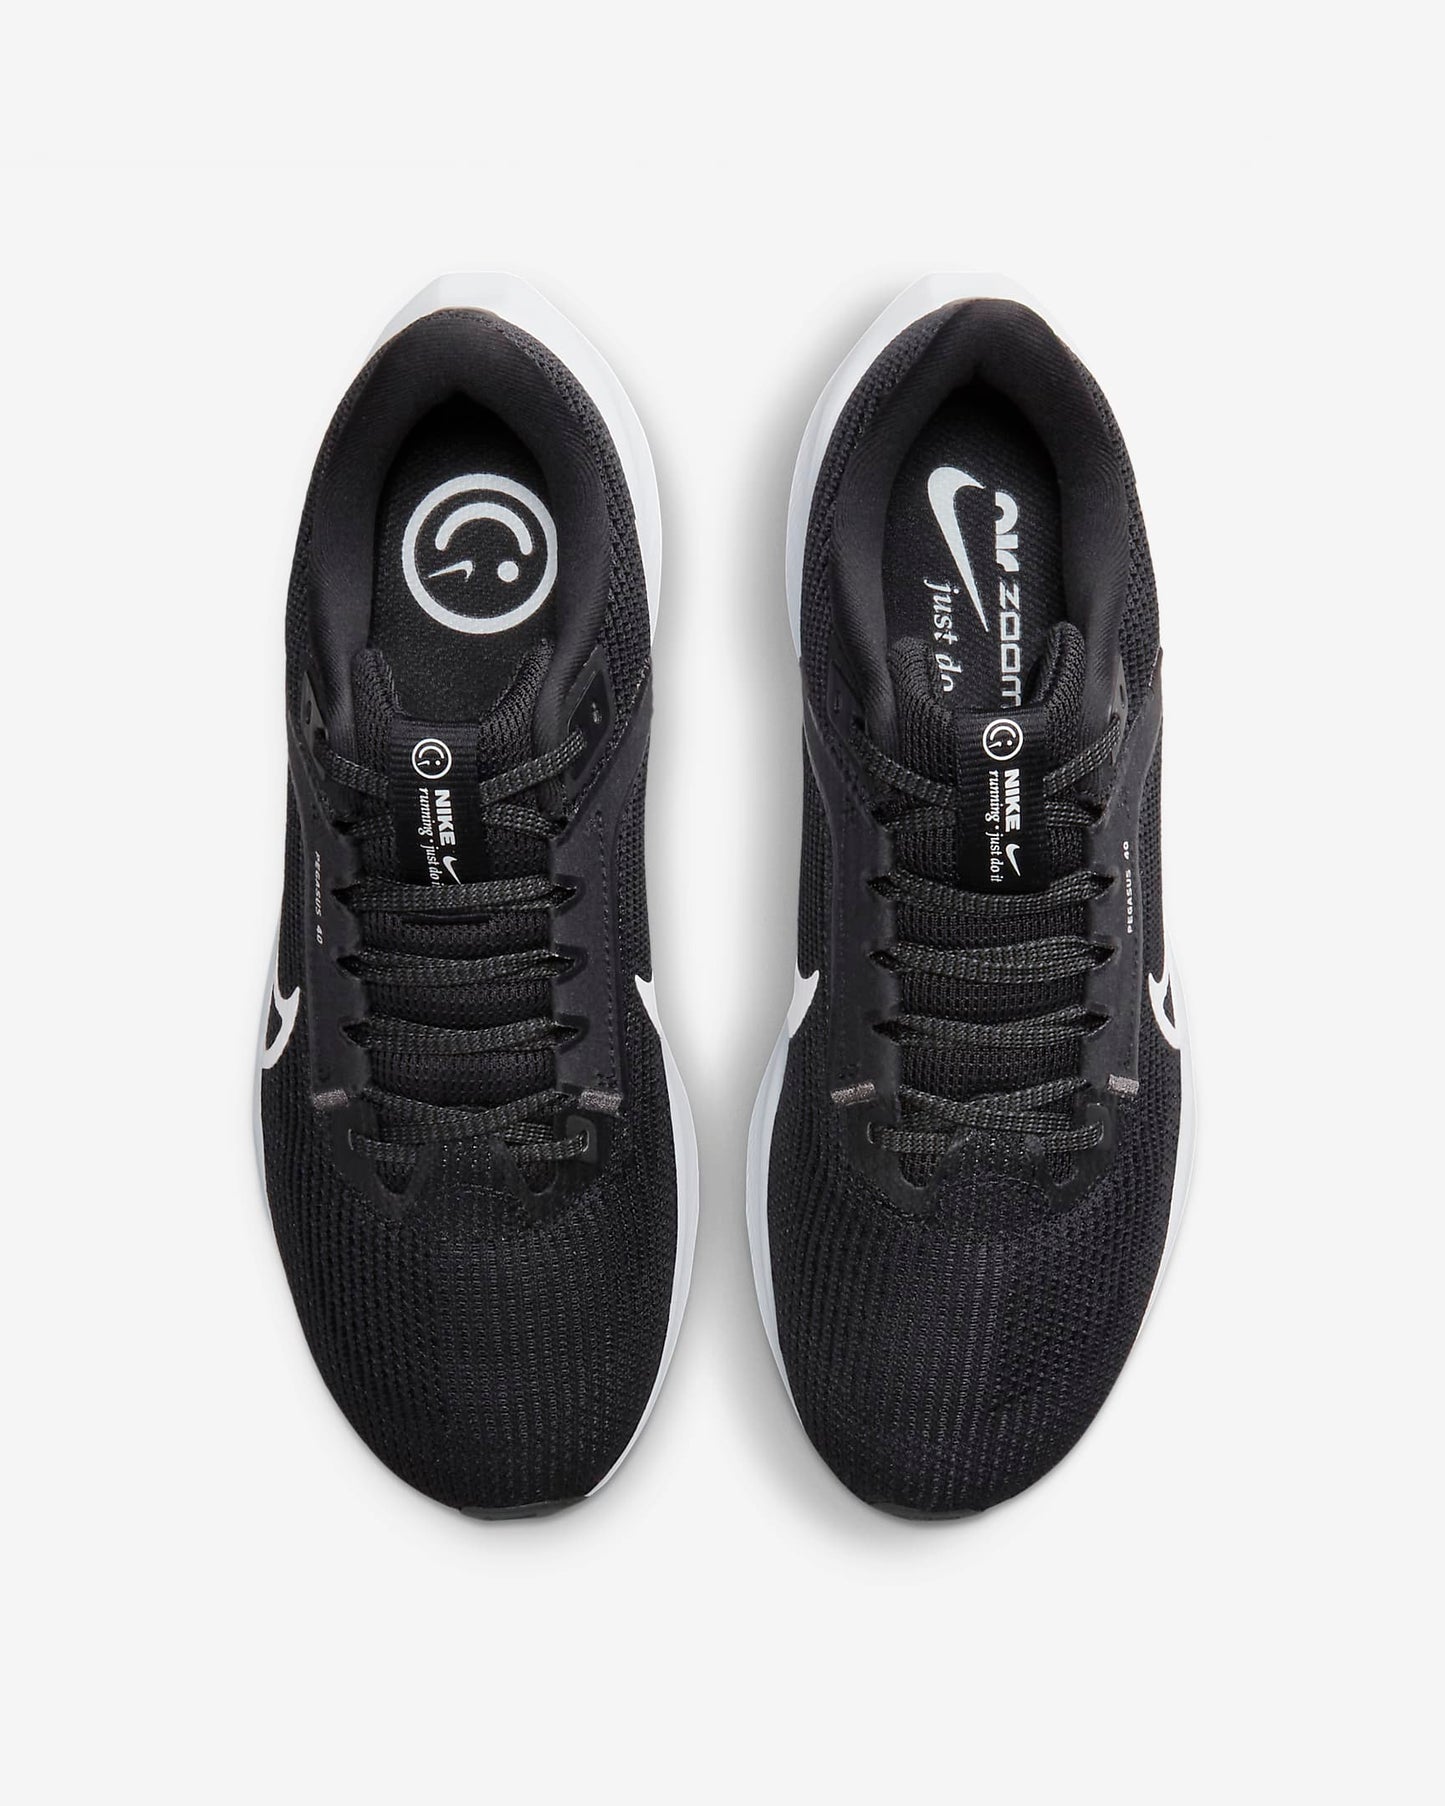 Nike Pegasus 40 Women's Road Running Shoes, Black/Iron Grey/White